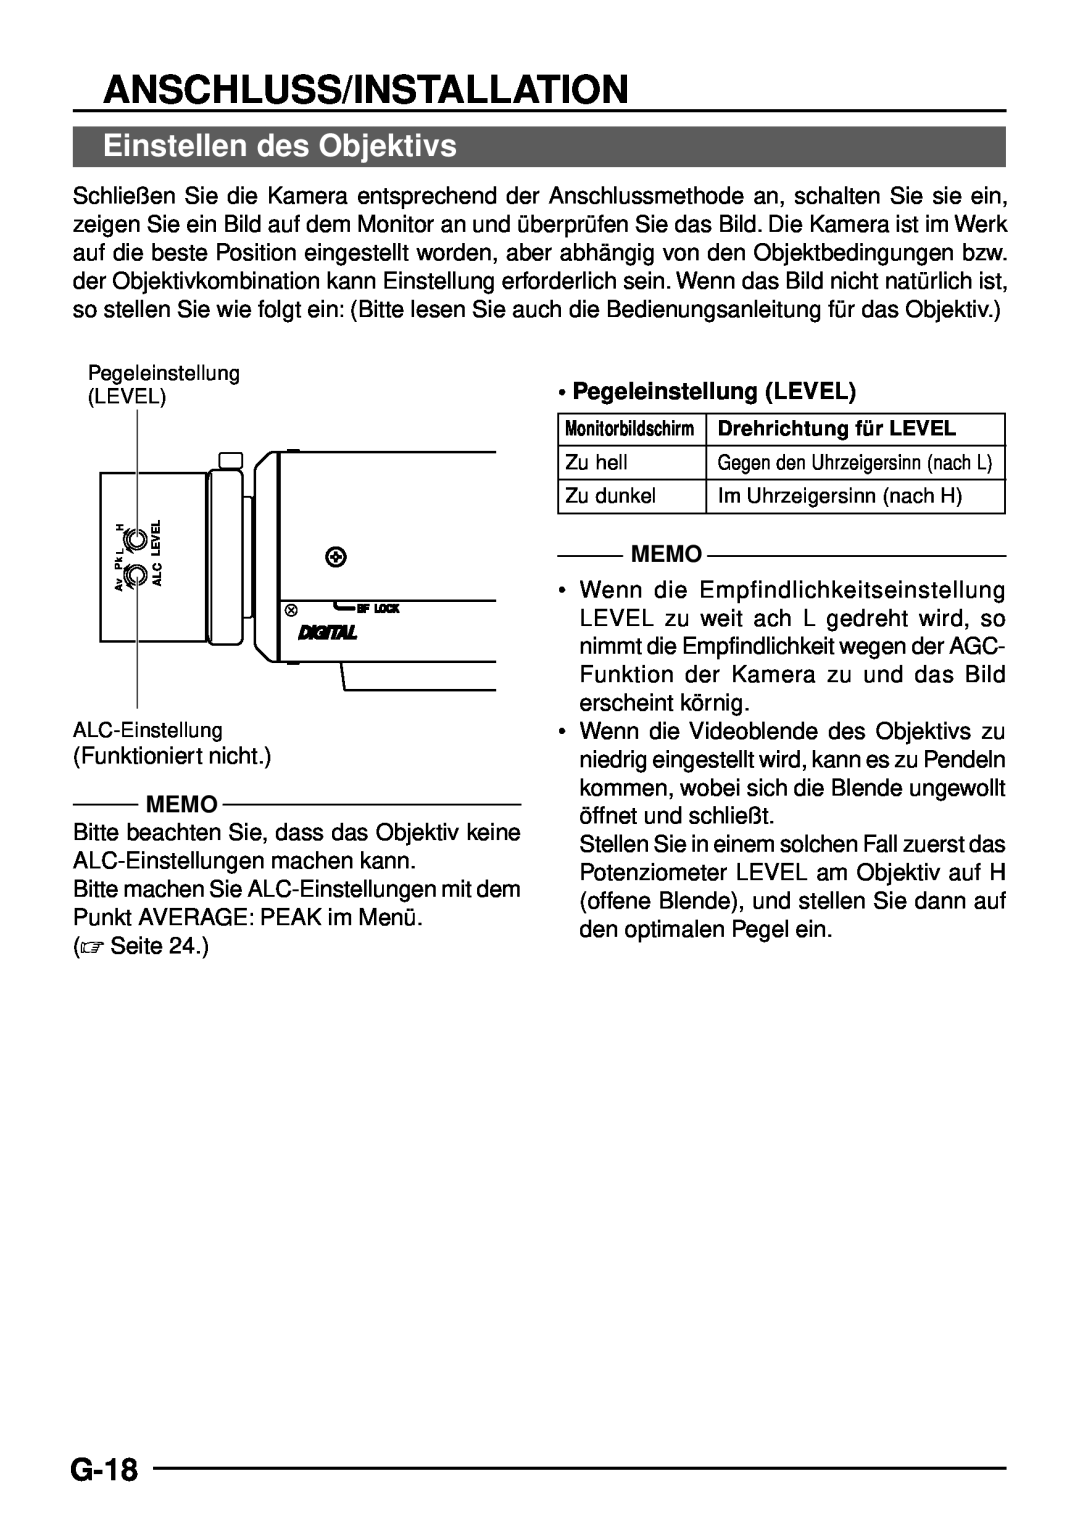 JVC TK-C1460 manual Einstellen des Objektivs, G-18, Anschluss/Installation, Memo, Pegeleinstellung LEVEL 